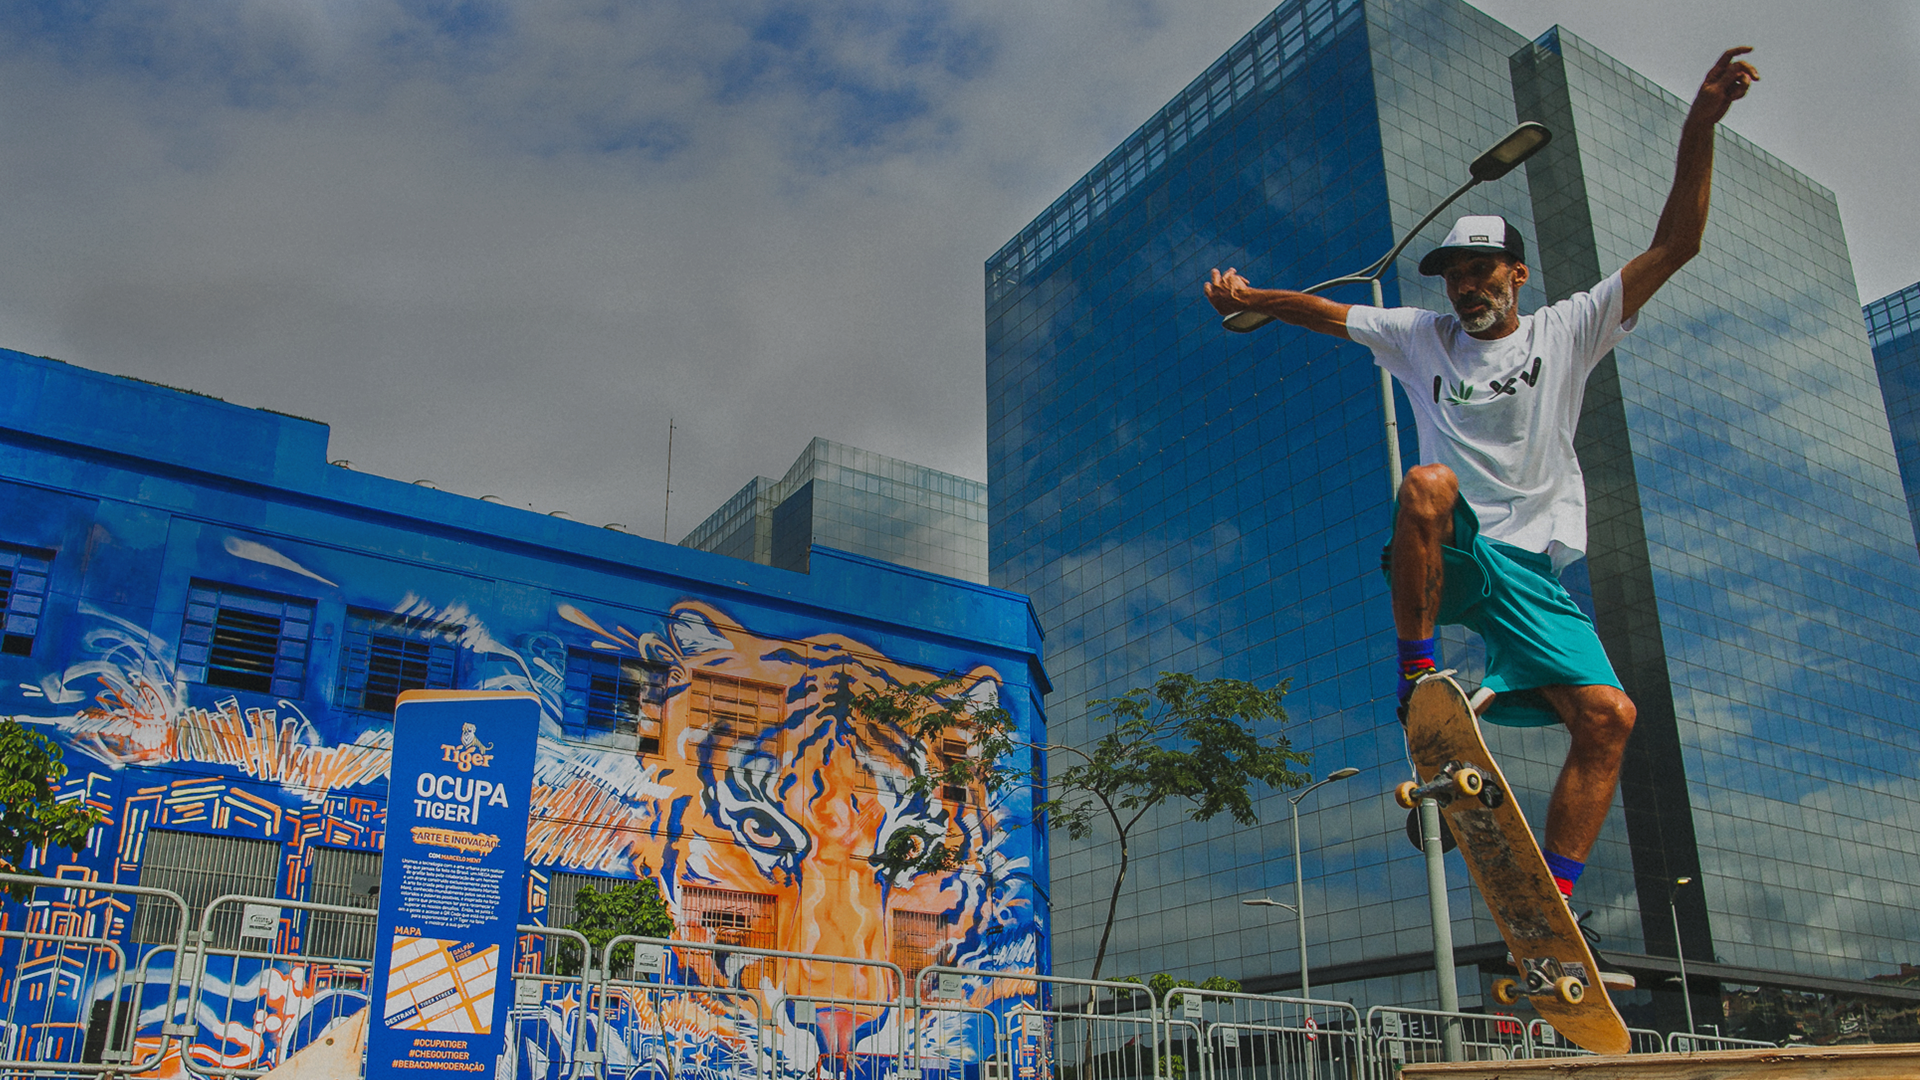 Manobra de skate na frente de um prédio com tigre grafitado.